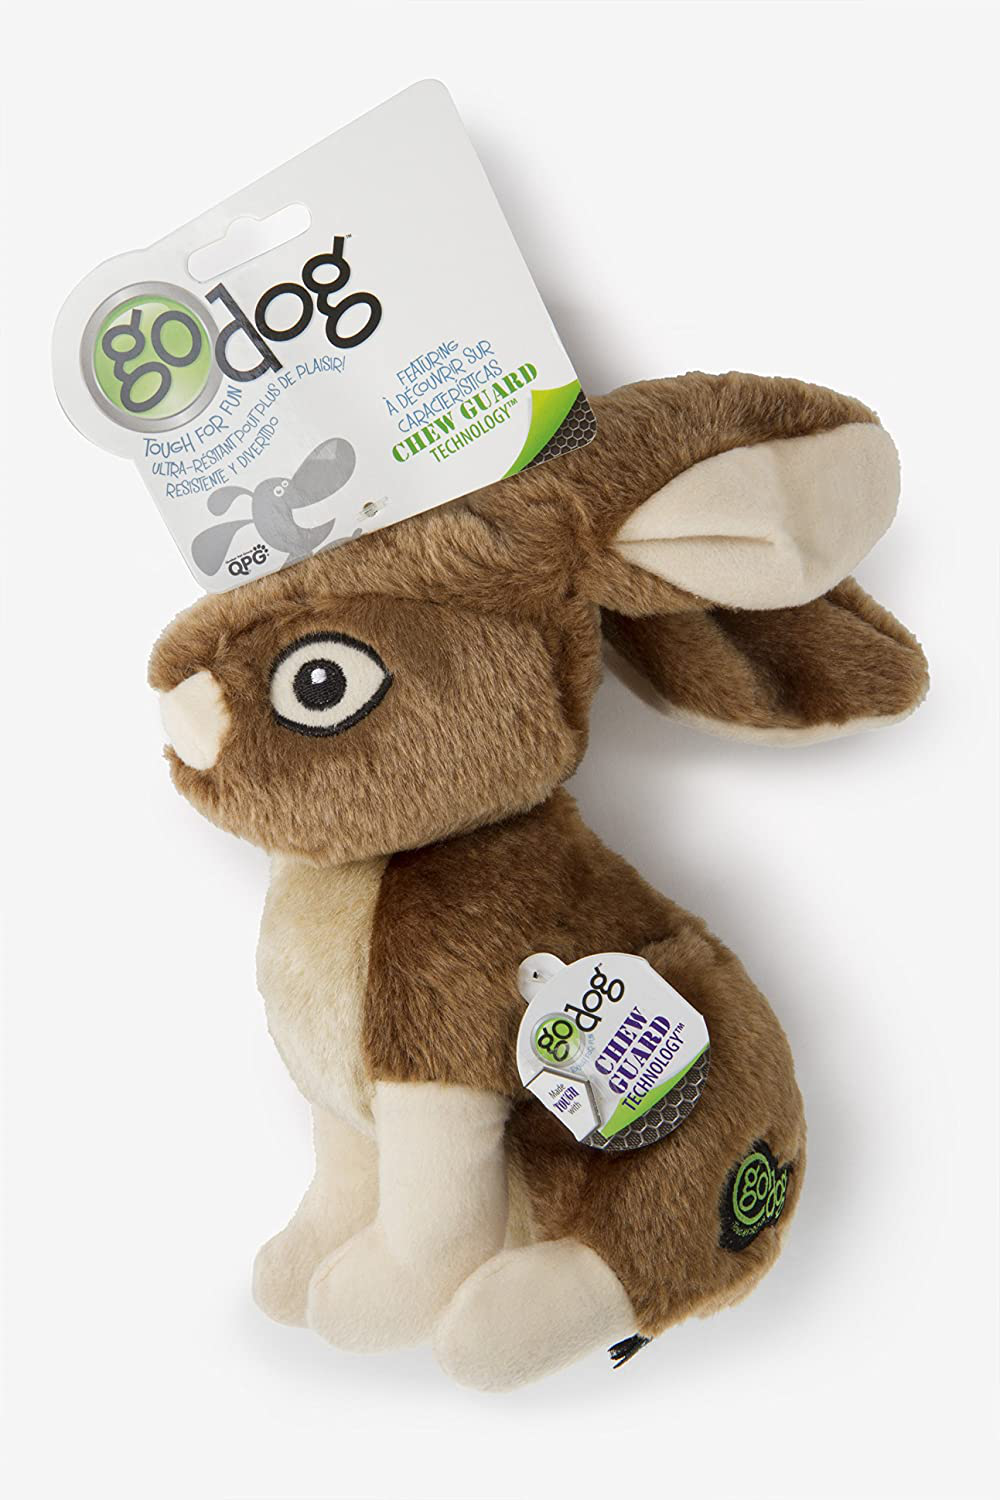 Godog Wildlife Rabbit Large Toy with Chew Guard Animals & Pet Supplies > Pet Supplies > Dog Supplies > Dog Toys goDog   